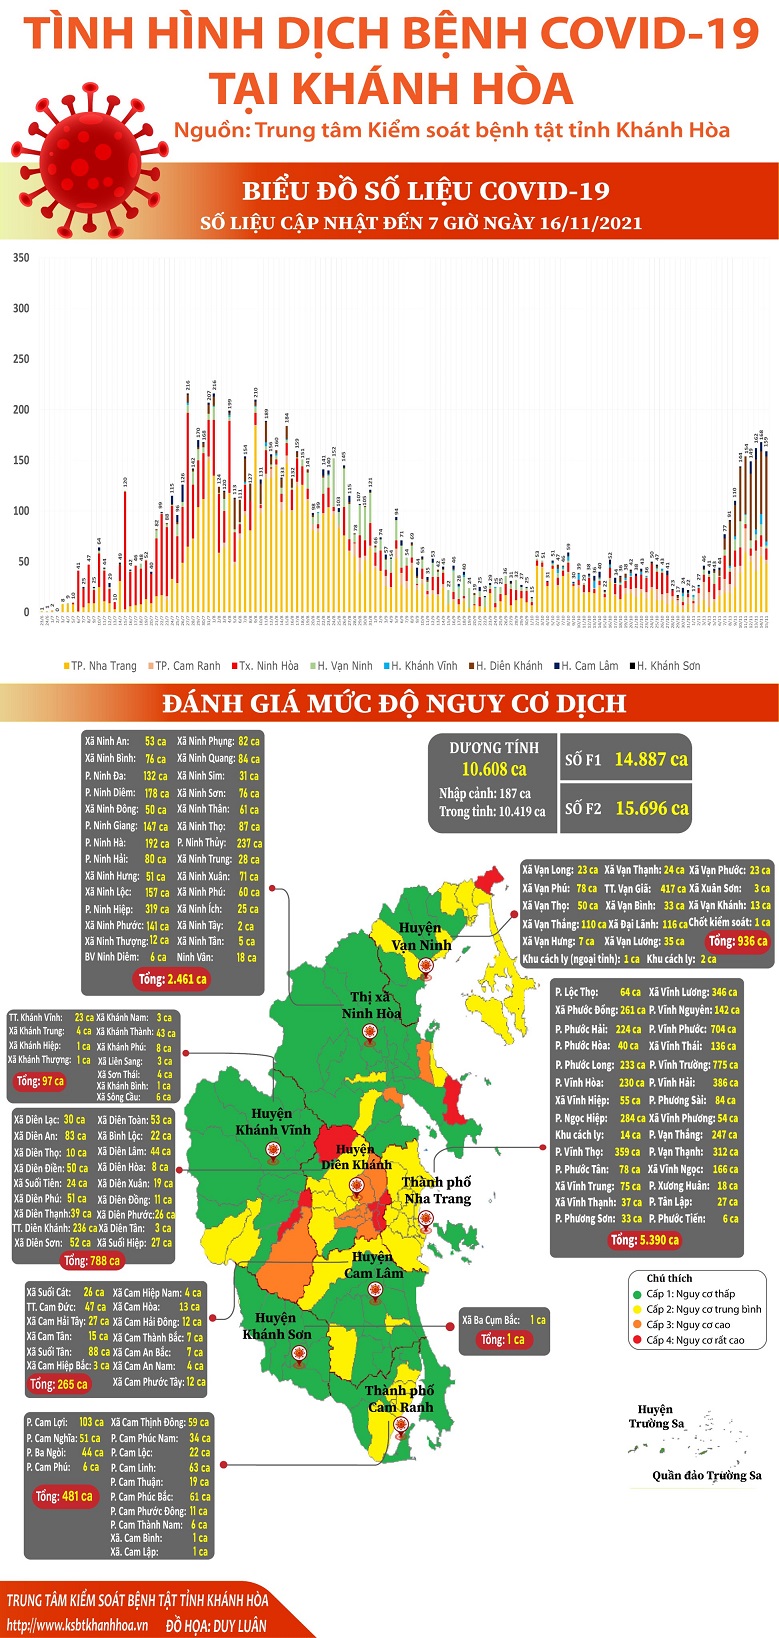 Biểu đồ tình hình dịch bệnh COVID-19 tại Khánh Hòa (Cập nhật đến 07 giờ 00 ngày 16/11/2021)